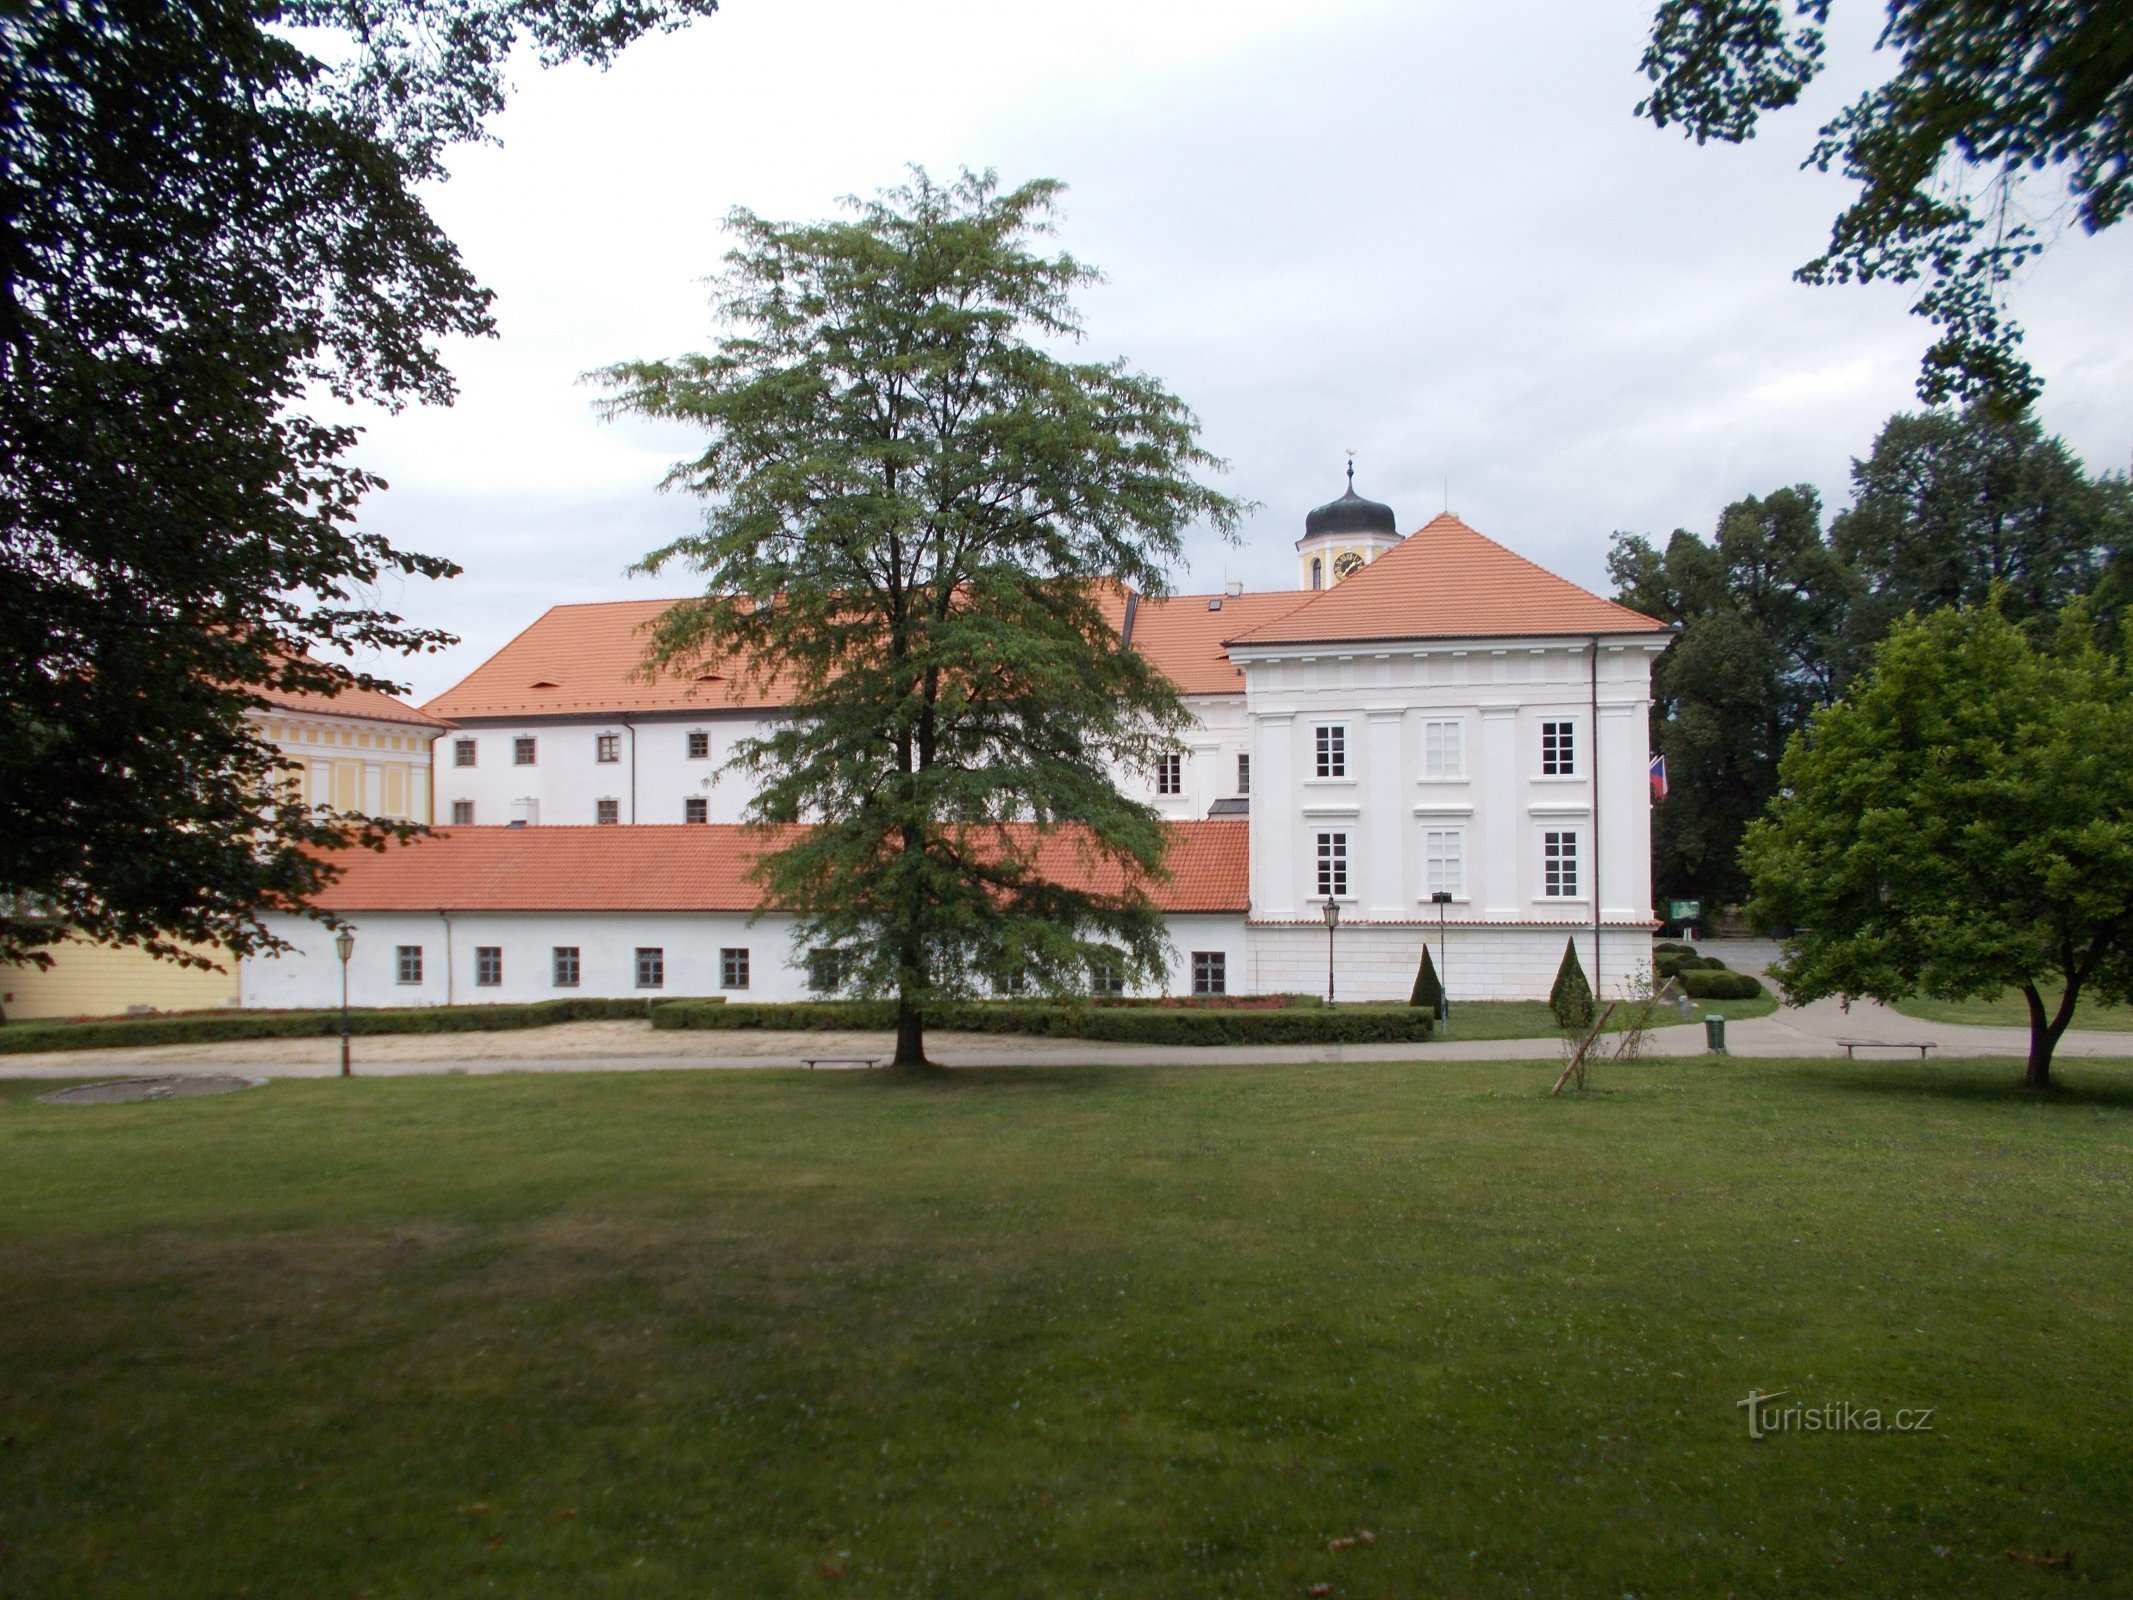 Parcul castelului Vlašim - castel